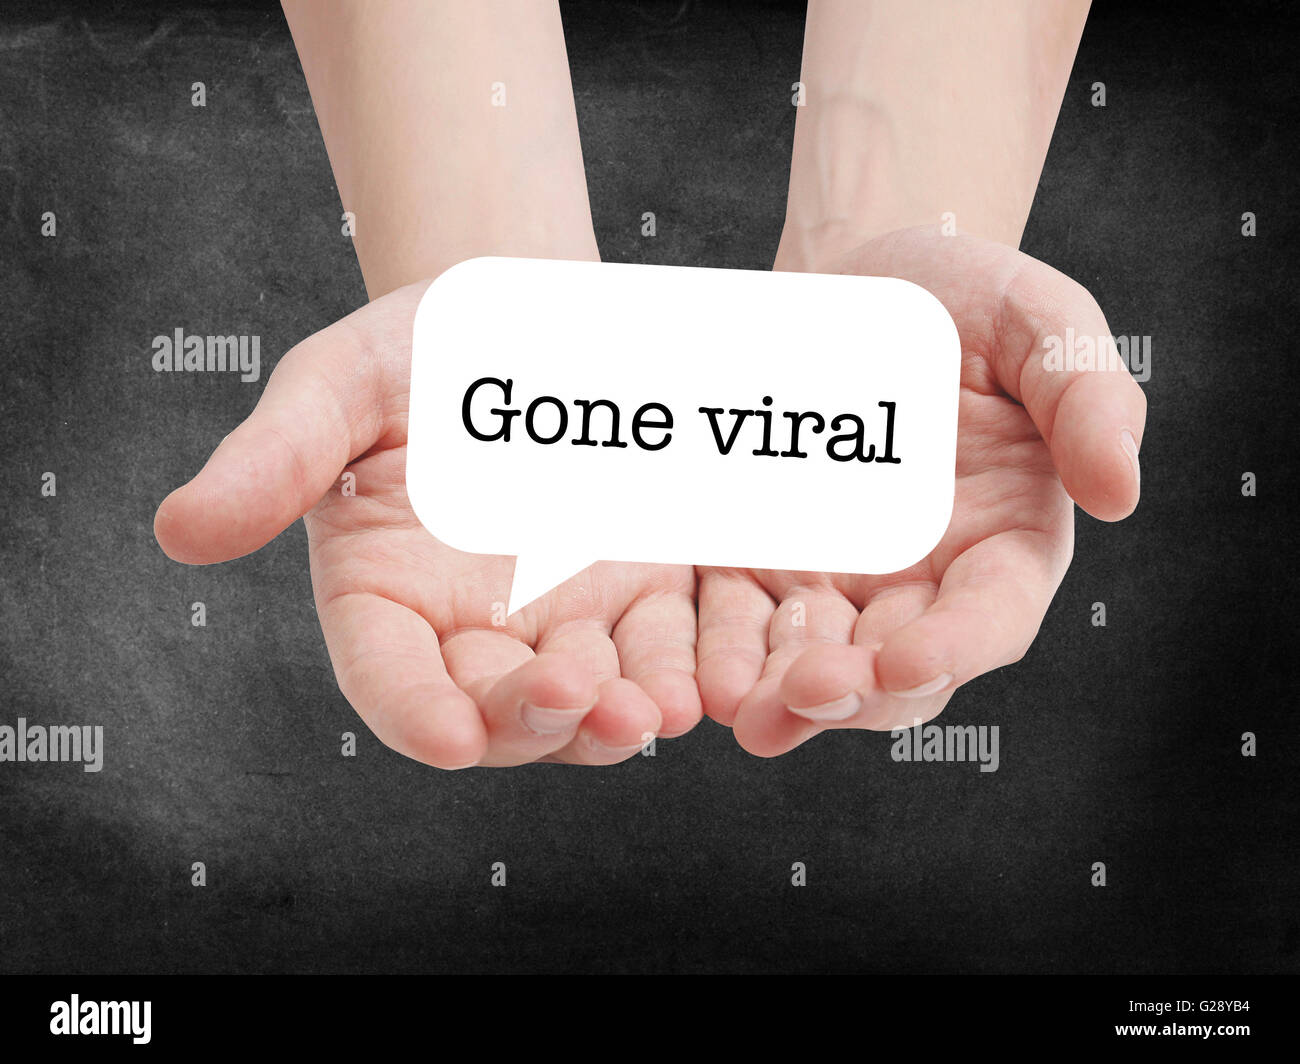 Gegangen virale geschrieben auf eine speechbubble Stockfoto